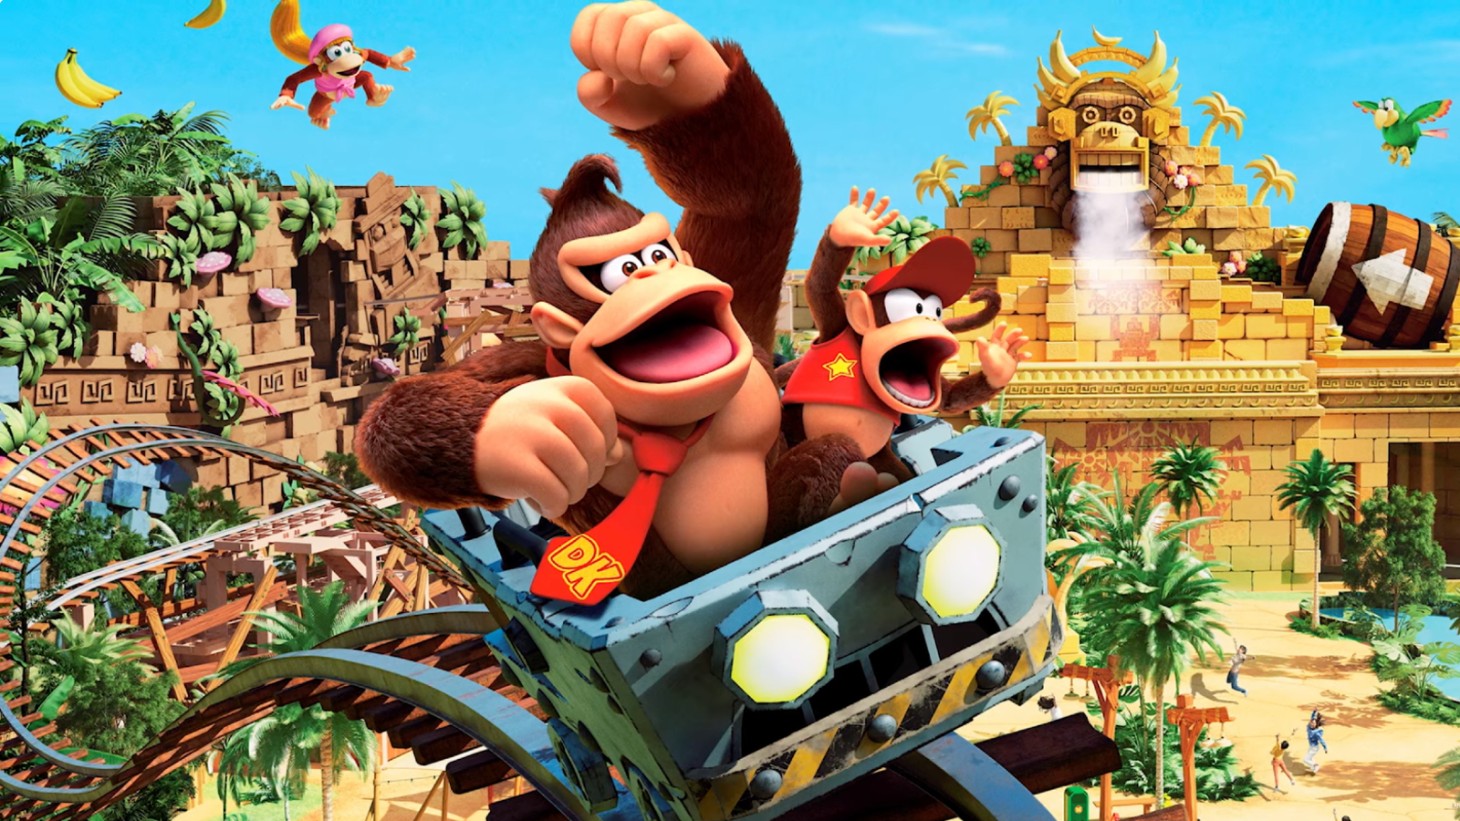 Universal Orlando bestätigt drei Super Nintendo World-Fahrgeschäfte, darunter die springende Donkey Kong-Achterbahn